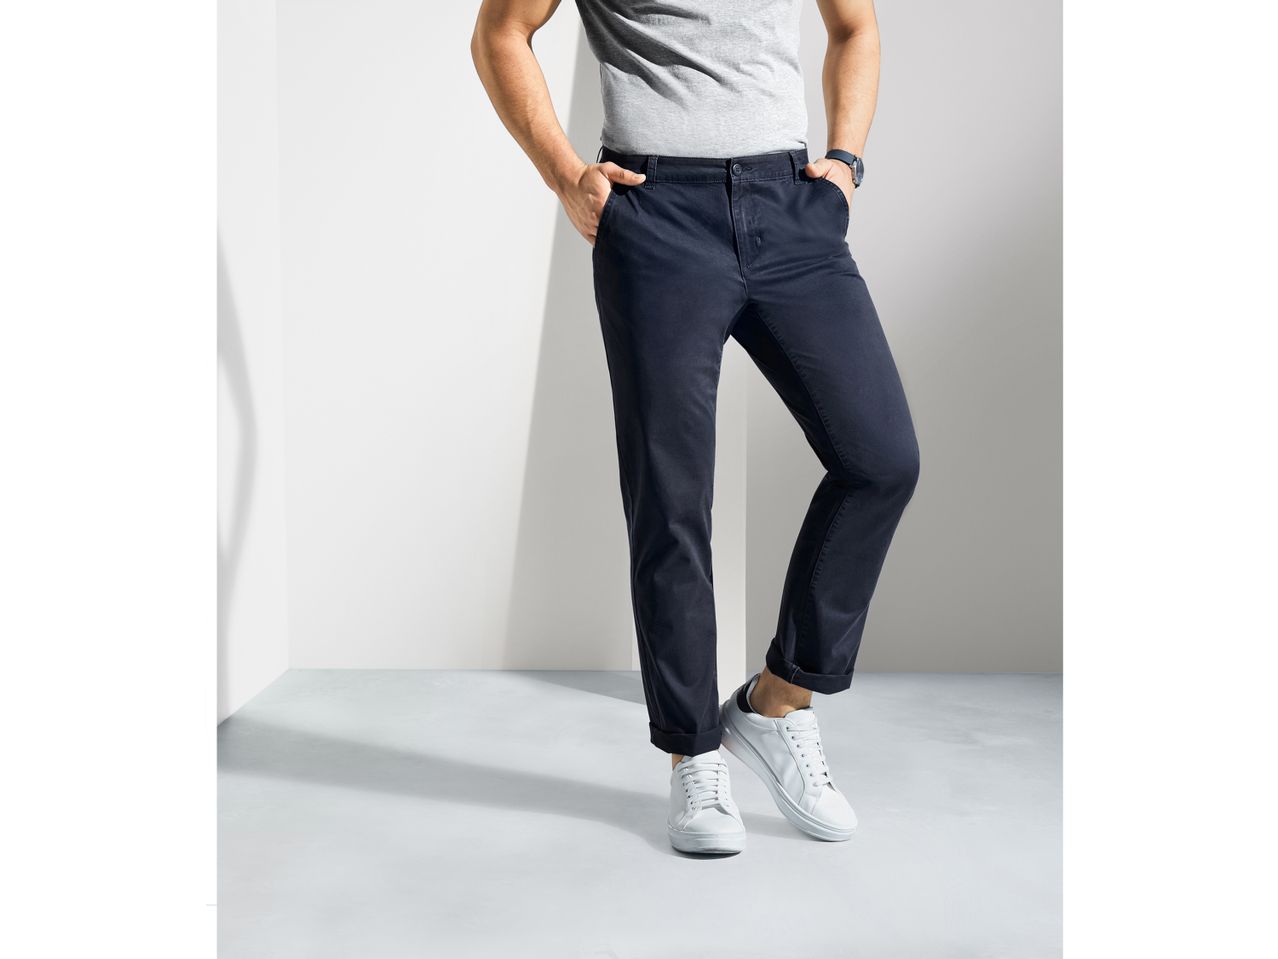 Pantaloni Chino Straight Fit da uomo , prezzo 11.99 EUR